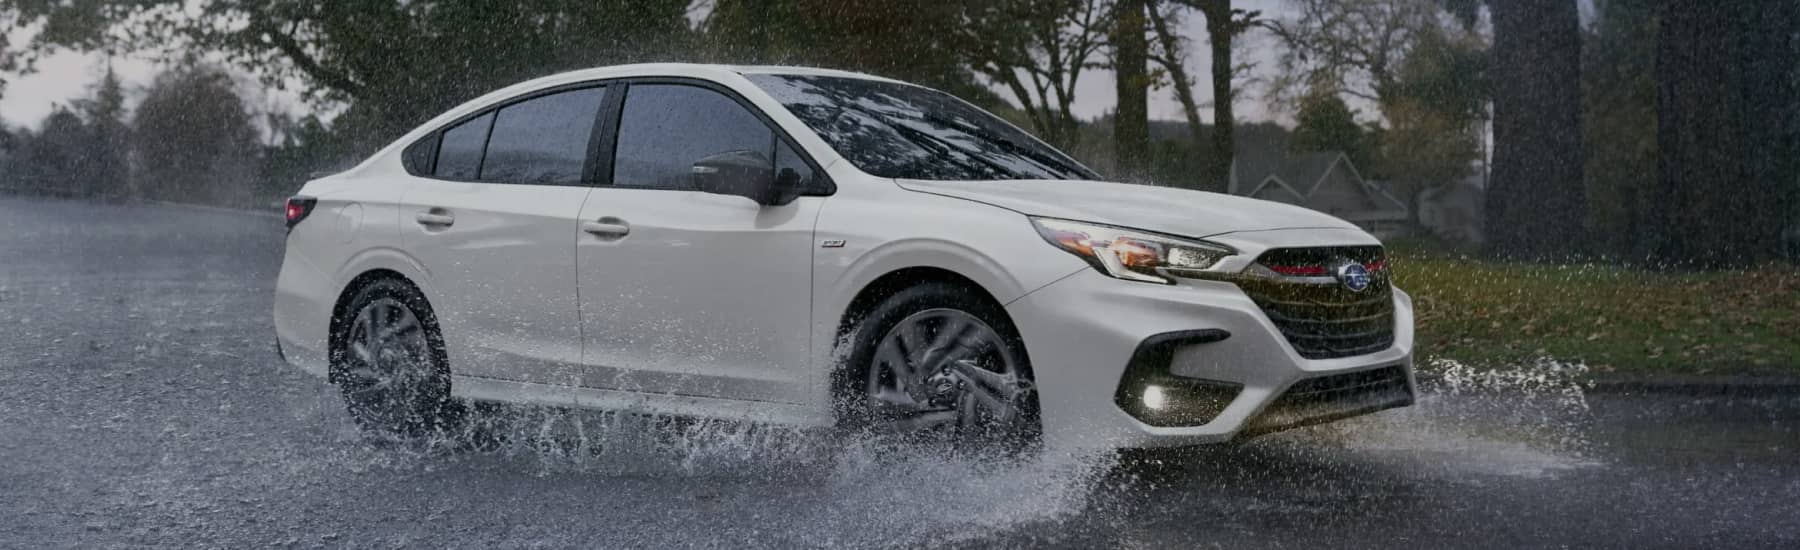 Subaru driving in the rain